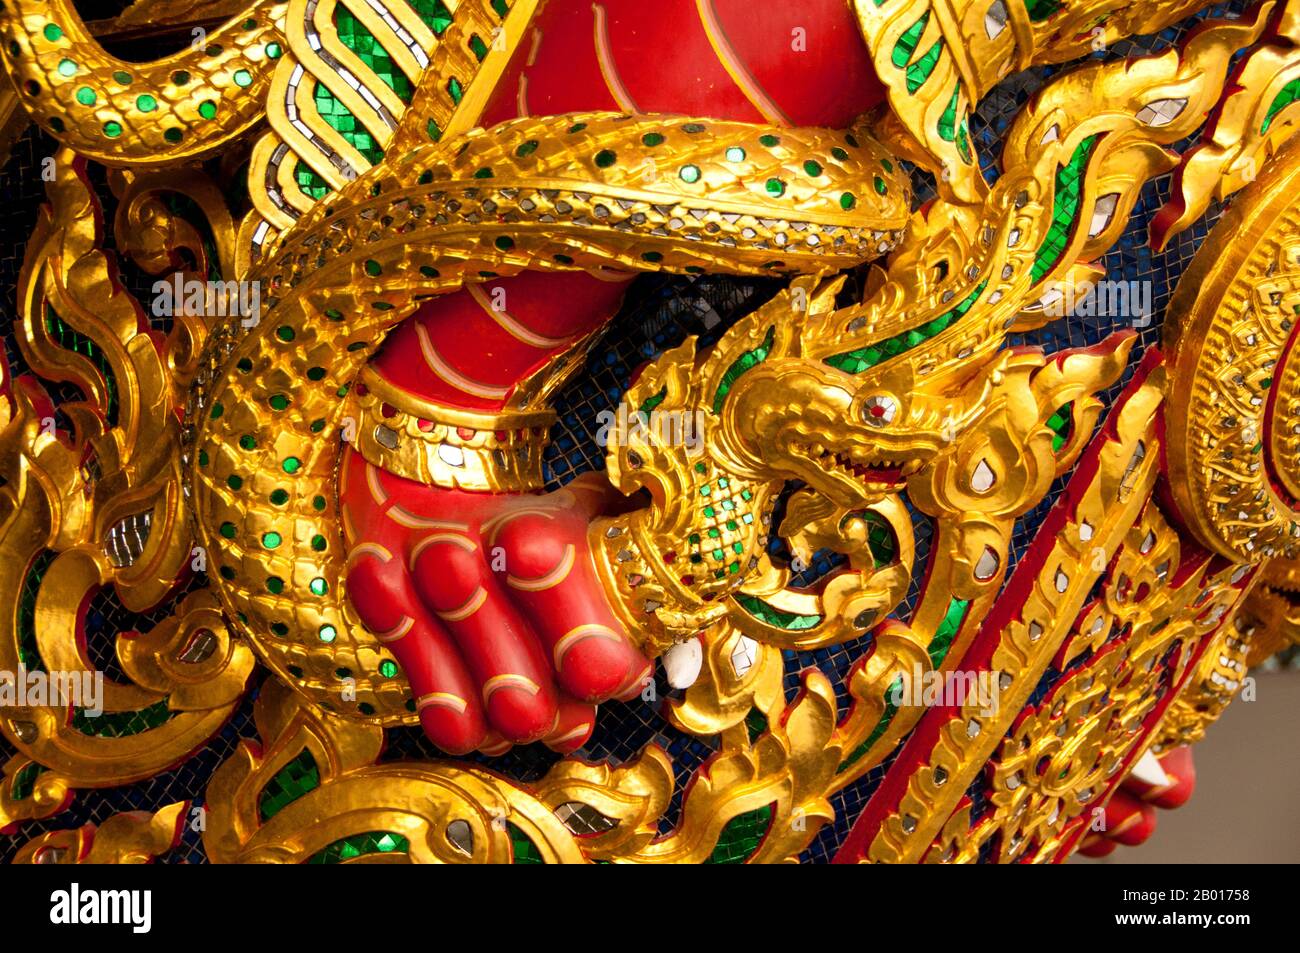 Tailandia: Detalle de Naga sobre la barcaza Narai Song Suban H. M. King Rama IX, Museo Real de Barges, Bangkok. El Rey Rama IX fue añadido a la colección de barcazas en 1996 para conmemorar los 50th años del Rey Bhumibol Adulyadej en el trono de Tailandia. Las barcazas reales de Tailandia se han utilizado en ceremonias en el río Chao Phraya de Bangkok desde el siglo 18th, pero también se utilizaron antes de este período en la era de Ayutthayan. Las exquisitamente elaboradas barcazas reales son una mezcla de artesanía y arte tradicional tailandés Foto de stock